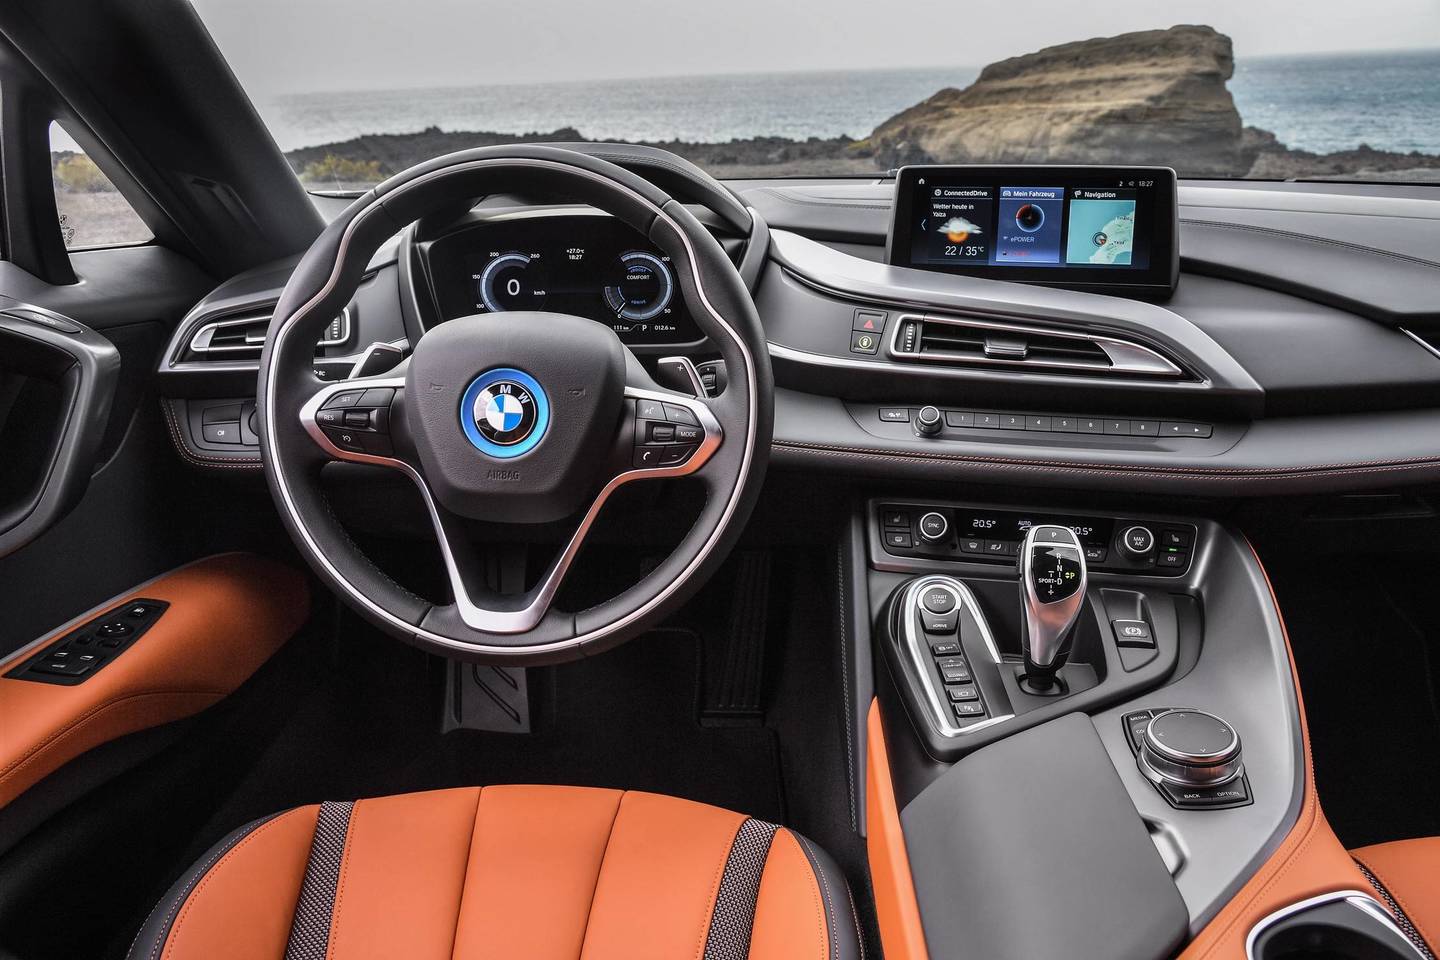 Atnaujingas BMW i8 bus siūlomas ne tik su kupė, bet ir su rodsterio kėbulu.